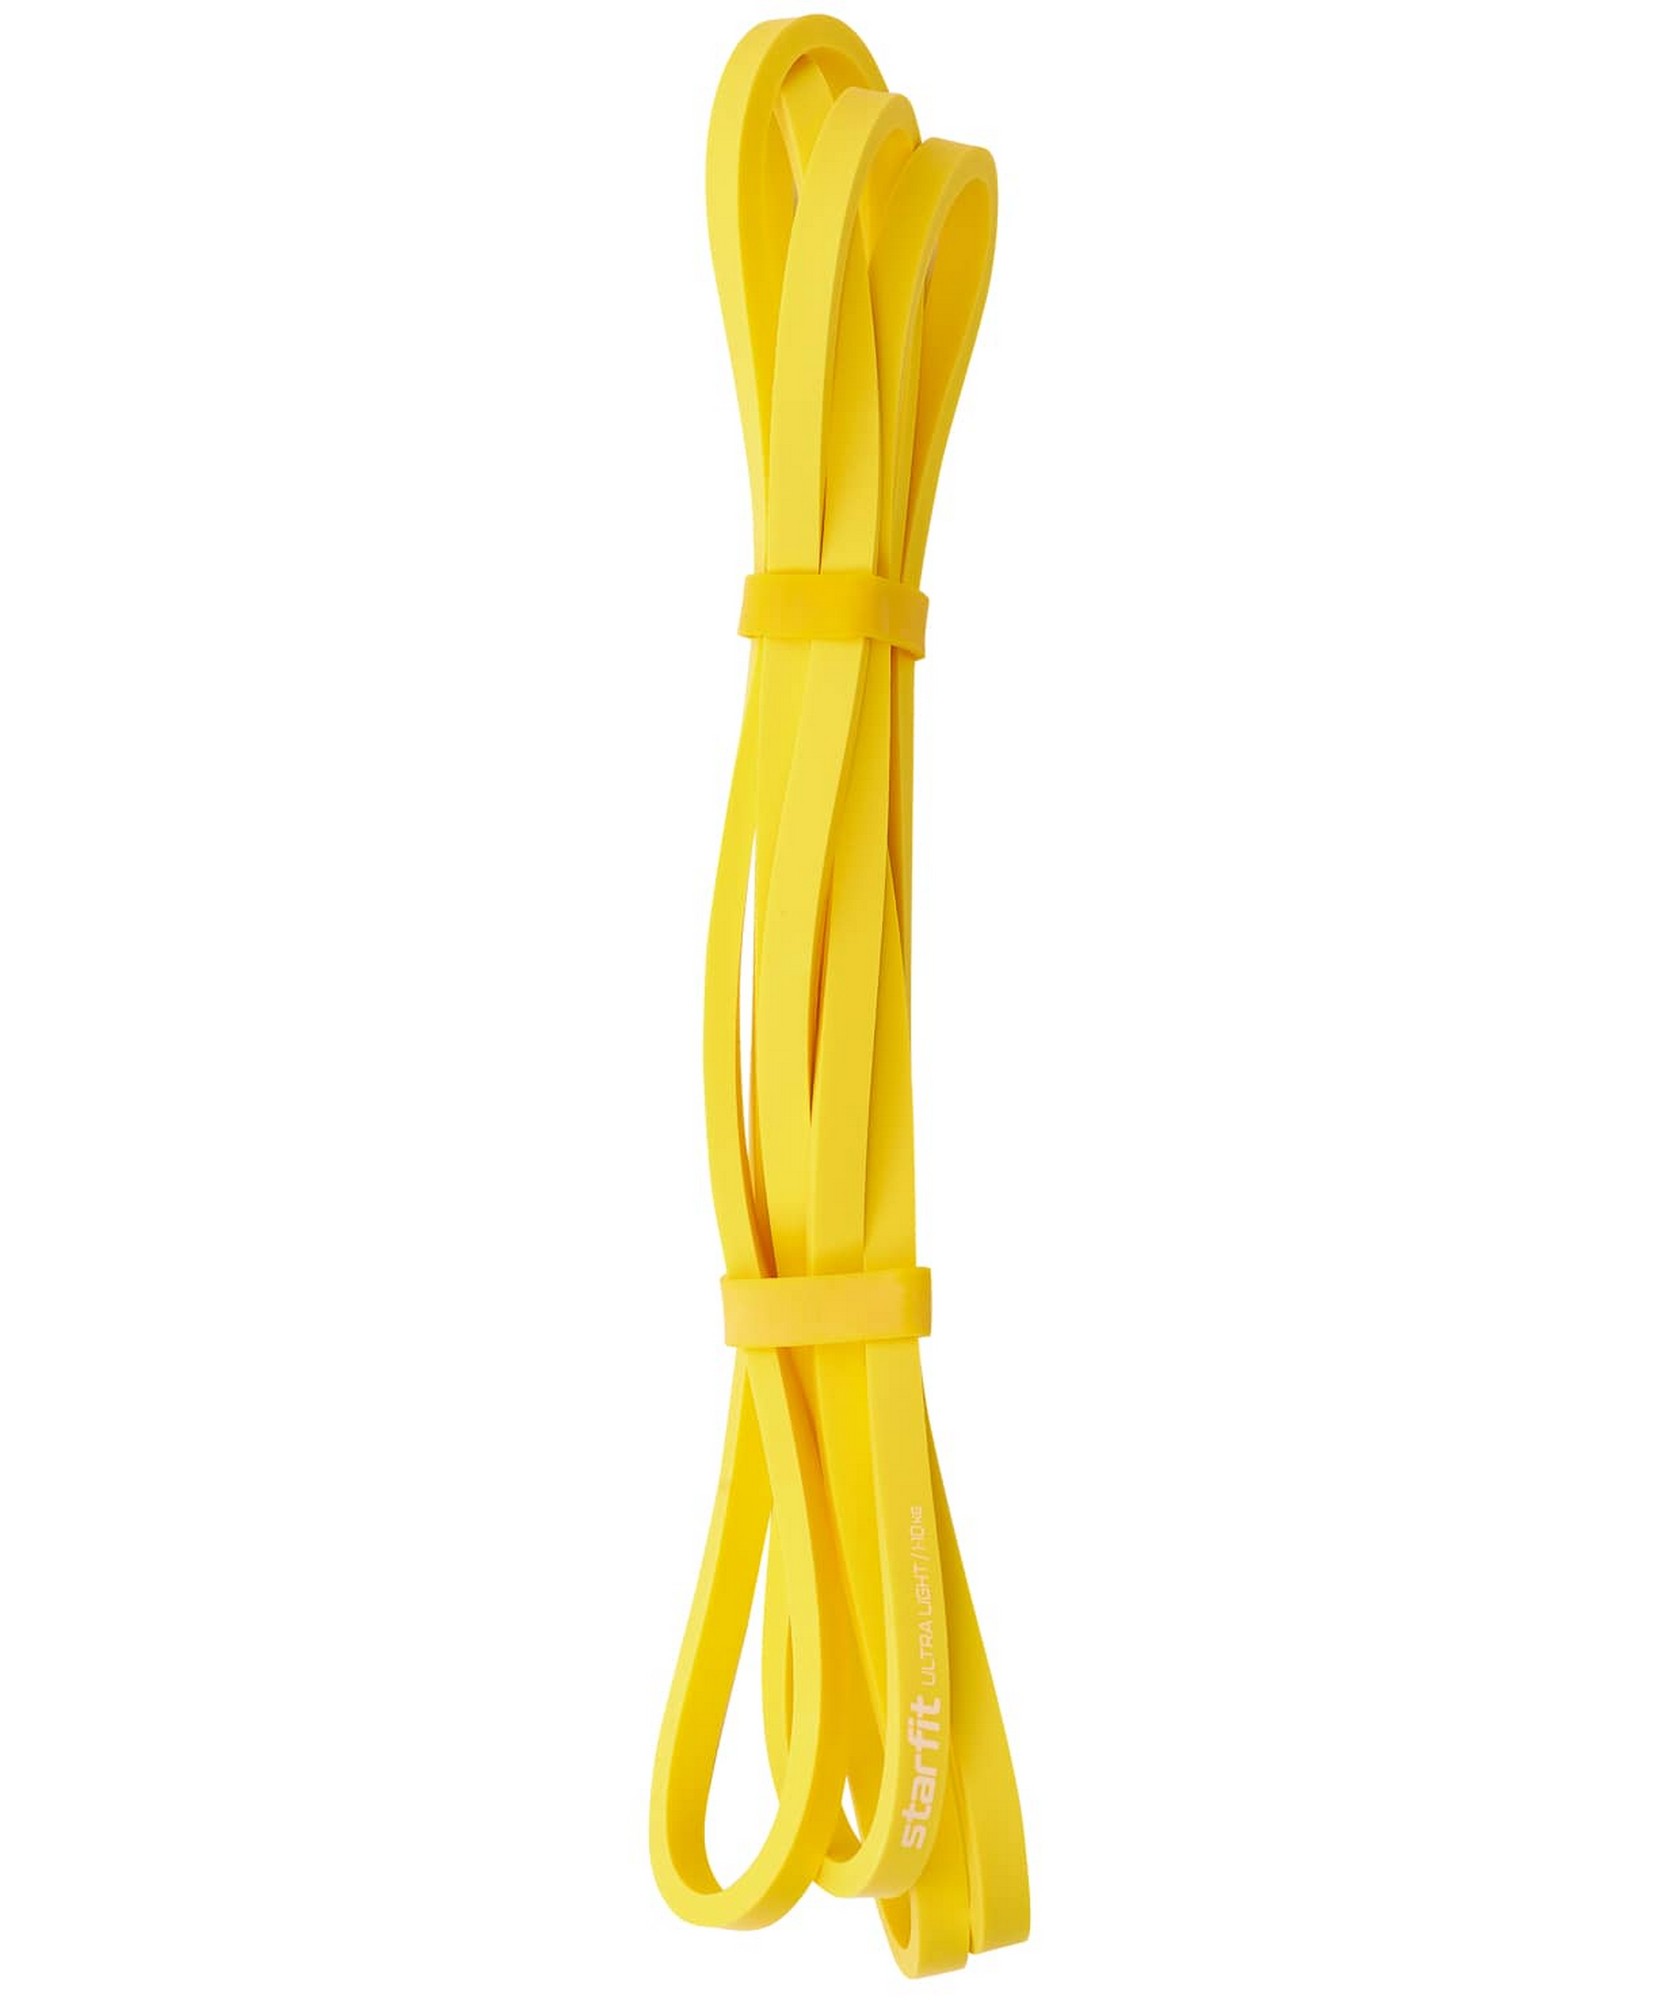 Эспандер ленточный для кросс-тренинга Star Fit 1-10 кг, 208х0,64 см ES-803 желтый 1667_2000